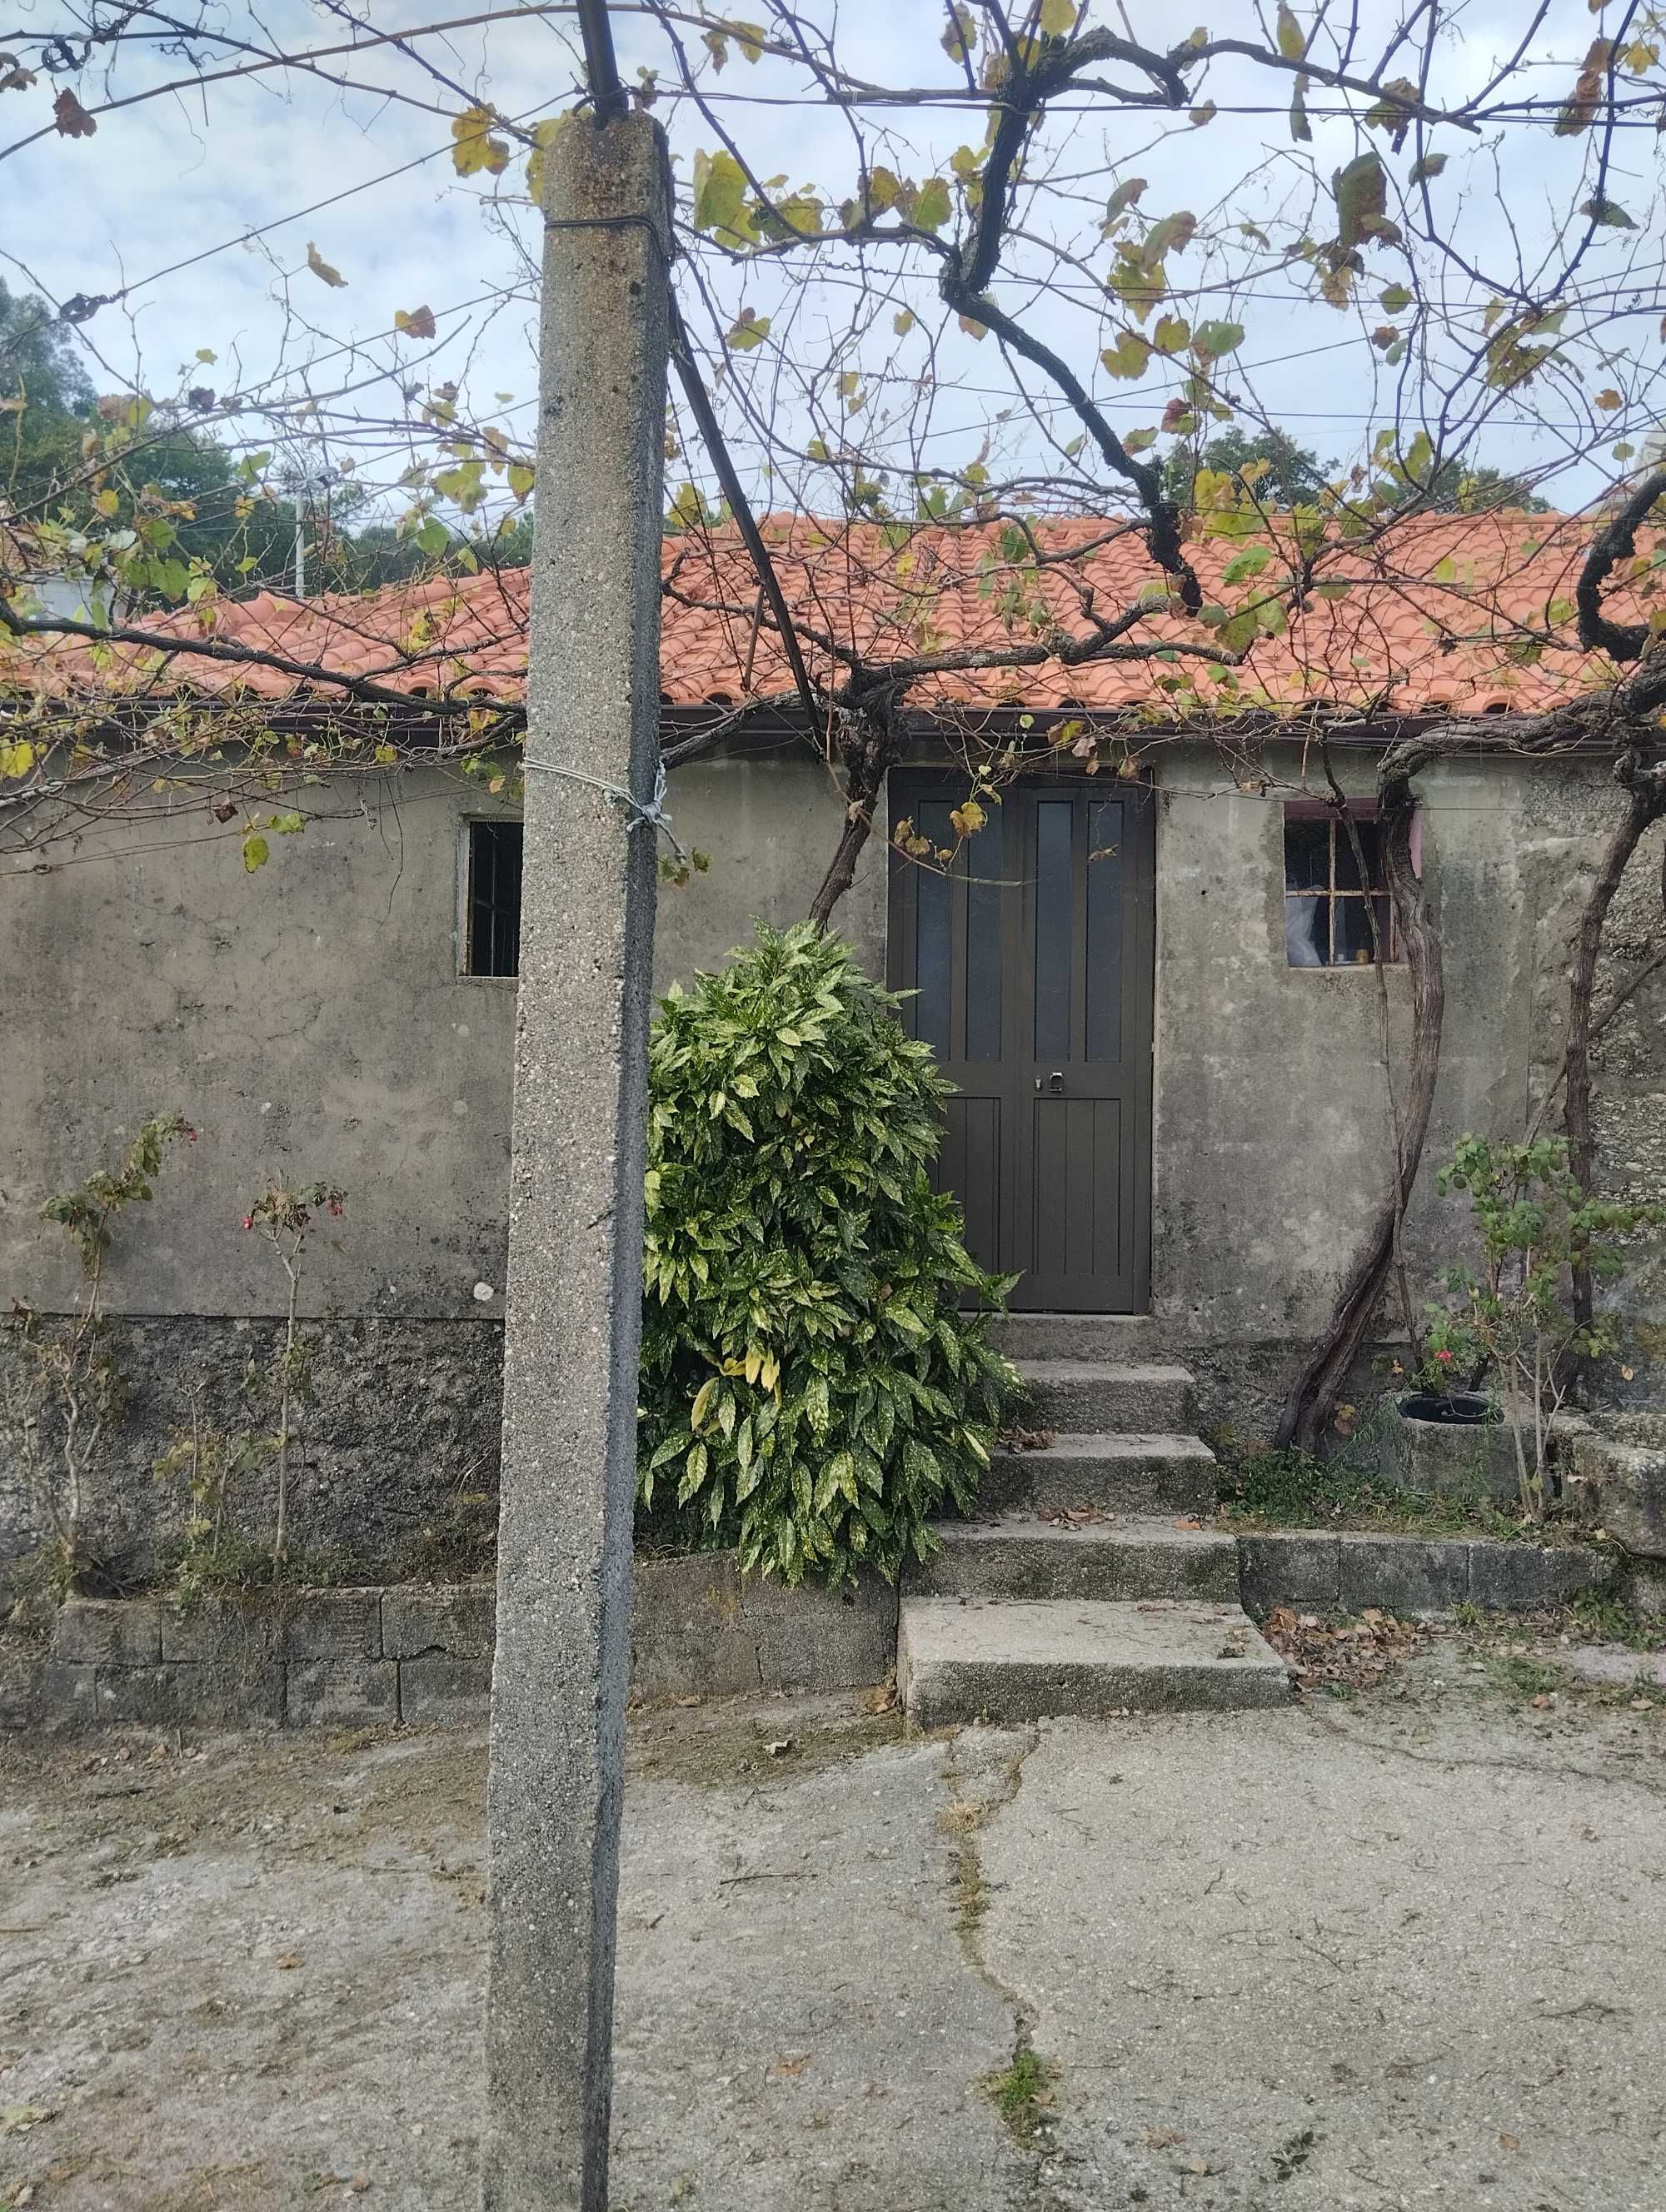 Moradia em pedra/ casa de aldeia - Miranda, Arcos de Valdevez